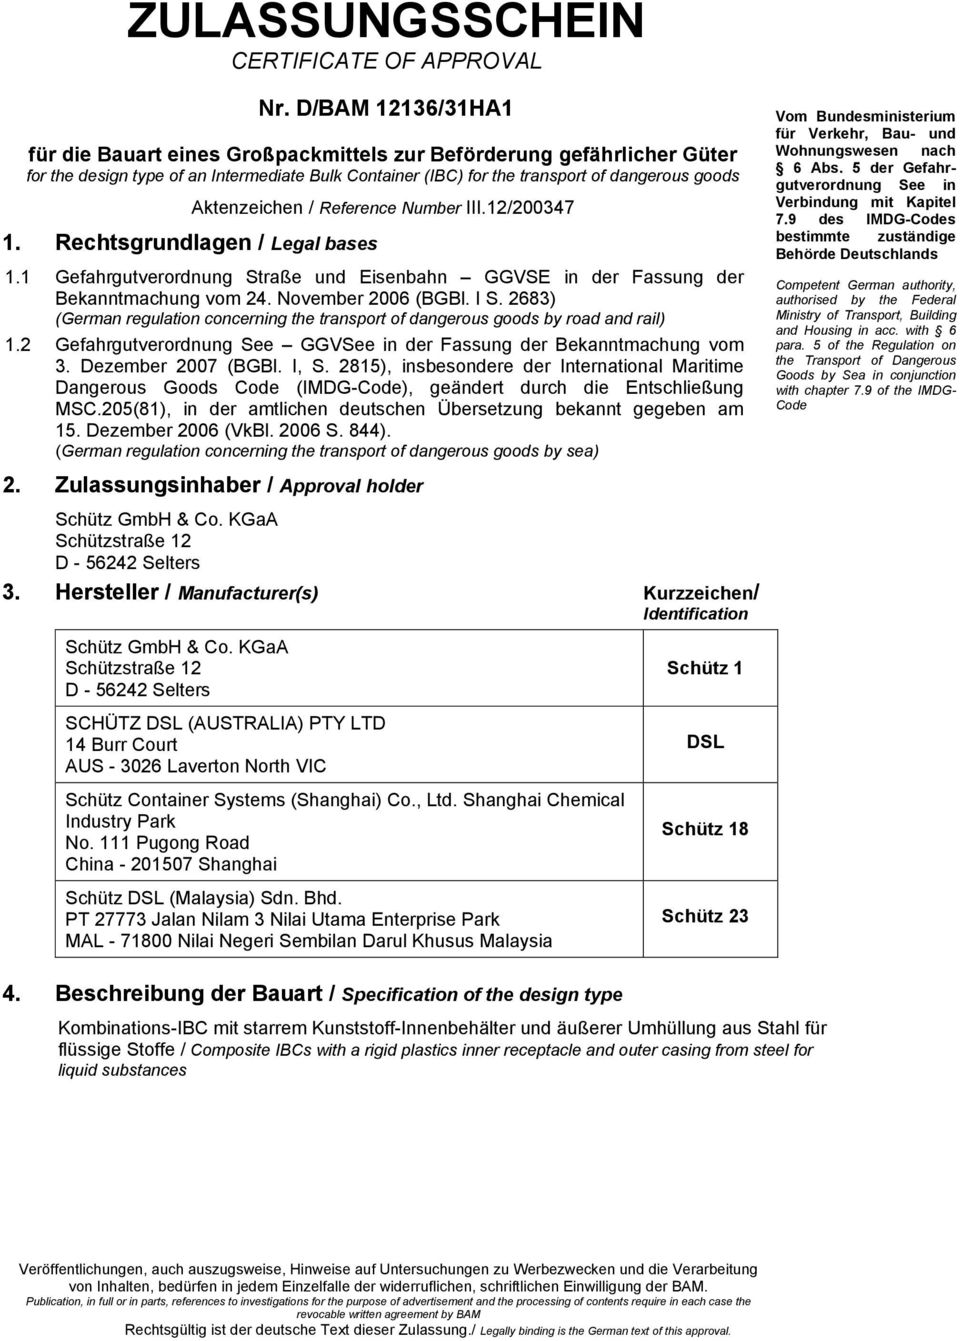 Rechtsgrundlagen / Legal bases Aktenzeichen / Reference Number III.12/200347 1.1 Gefahrgutverordnung Straße und Eisenbahn GGVSE in der Fassung der Bekanntmachung vom 24. November 2006 (BGBl. I S.